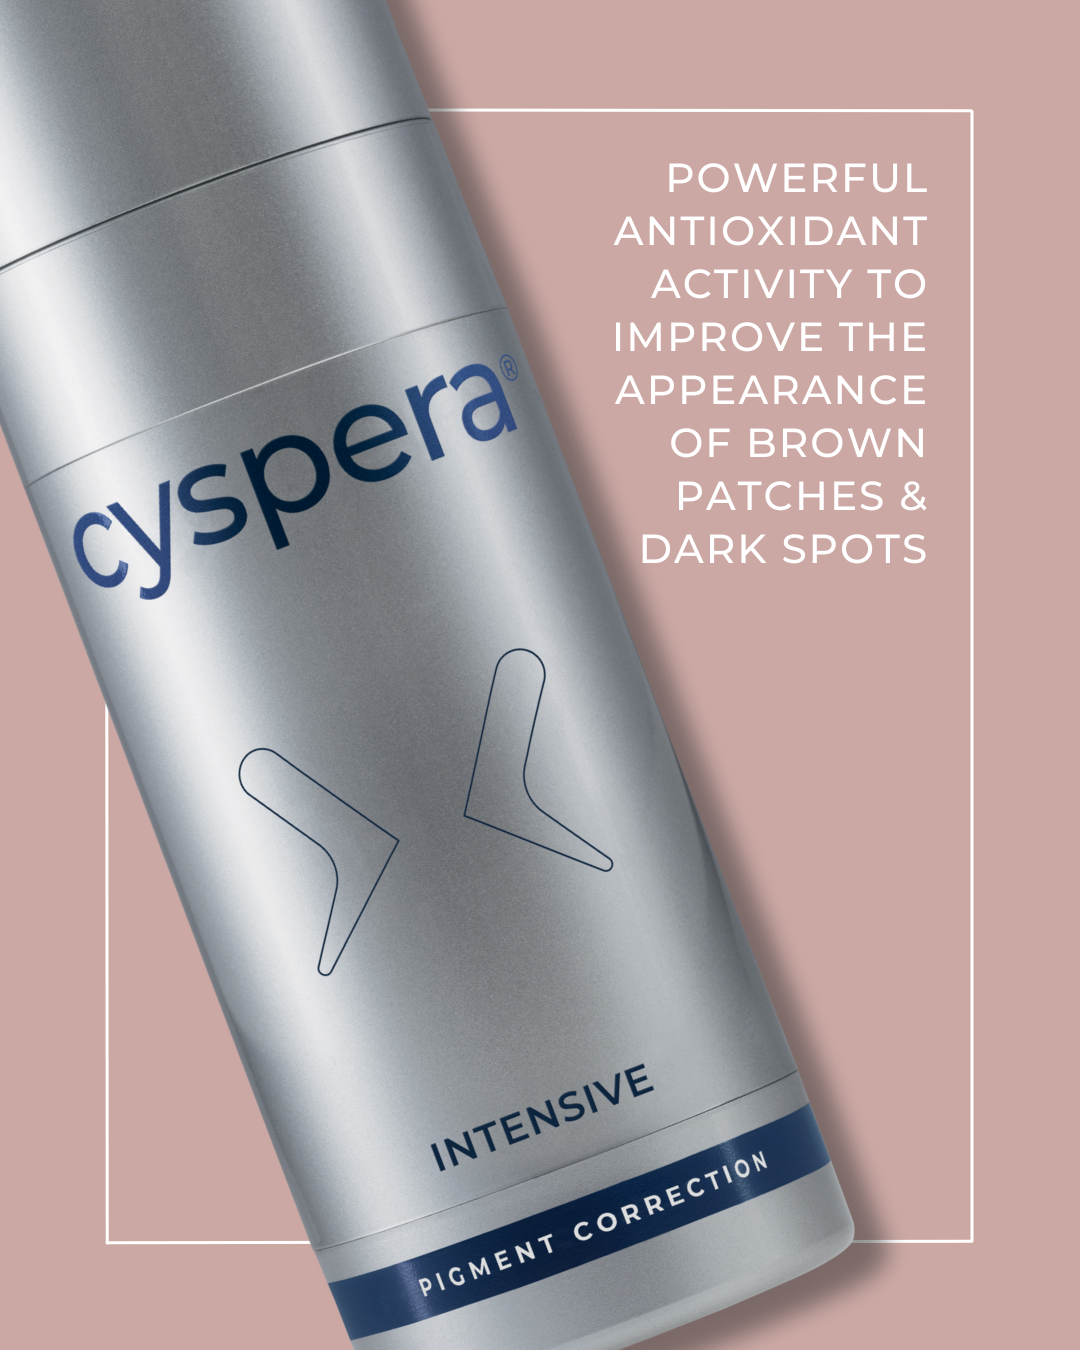 Cyspera Intensive 7%